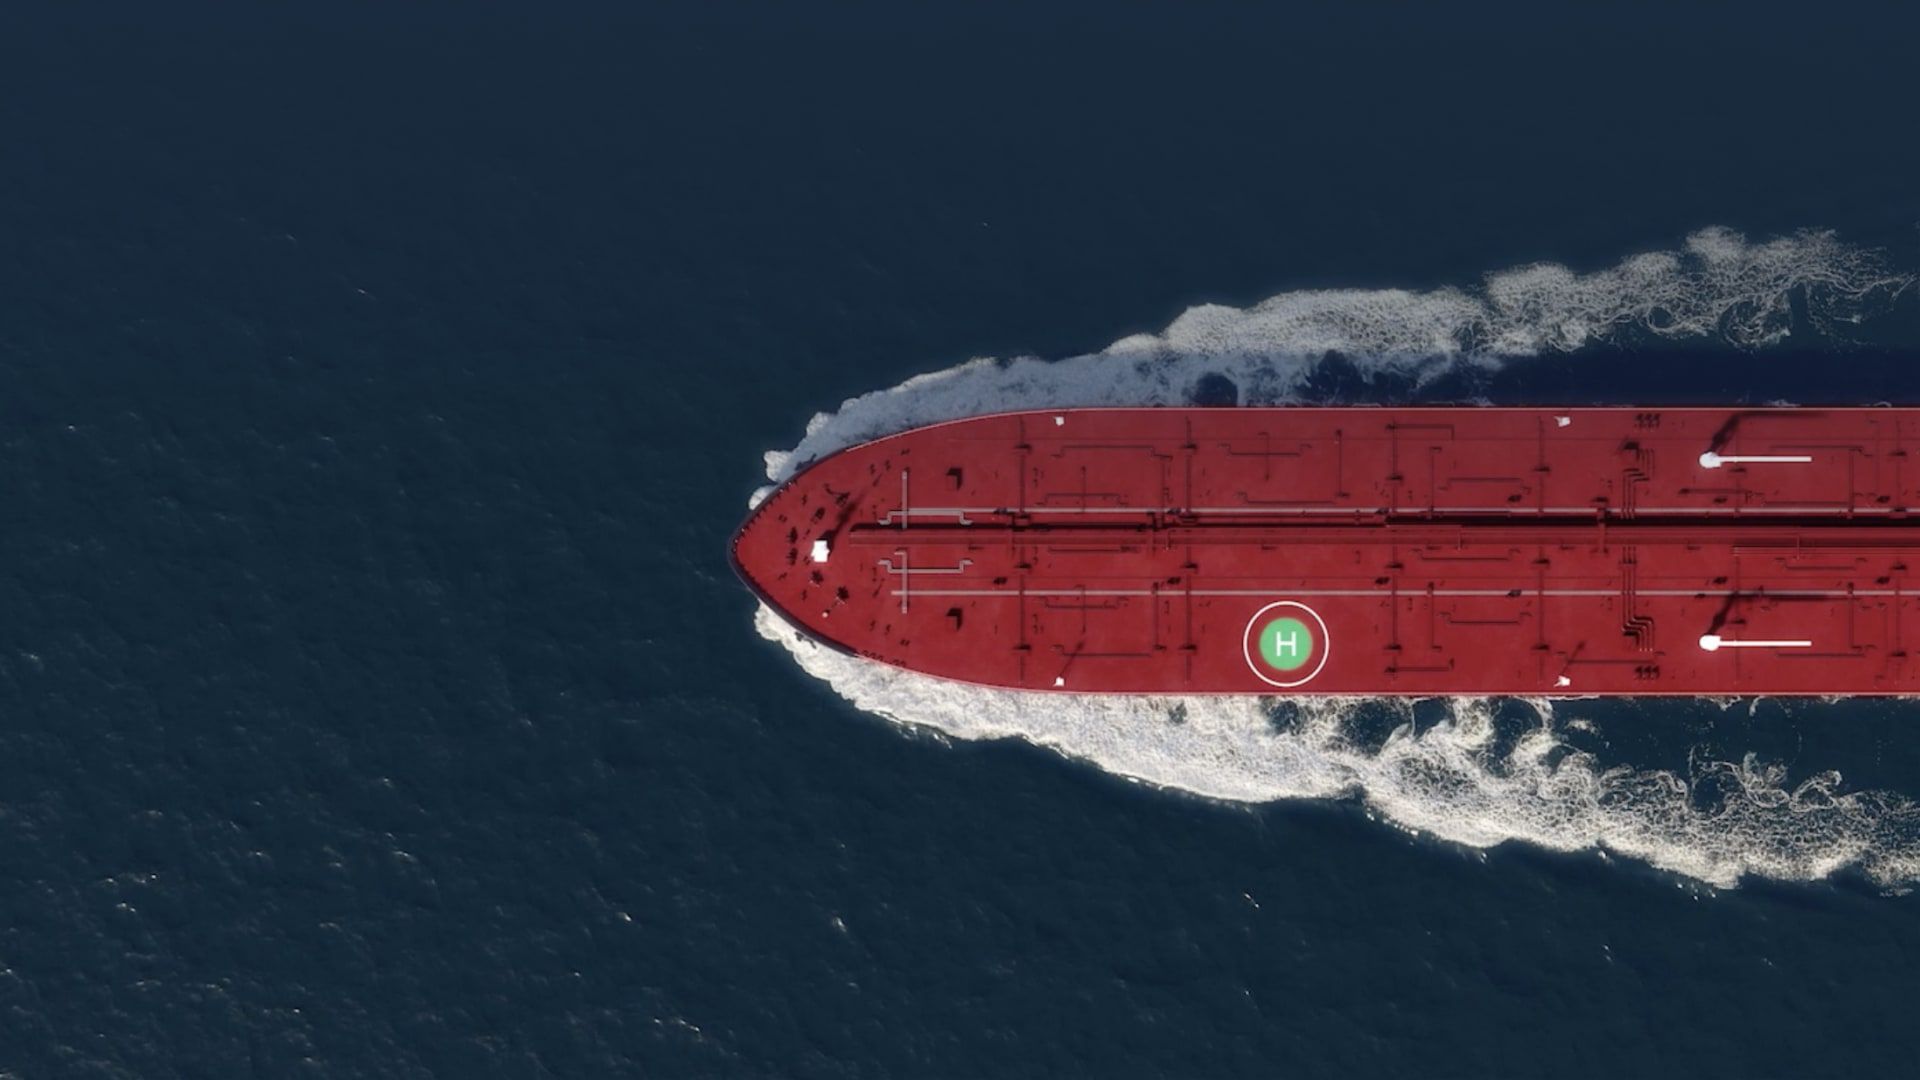 Oxagon: Hafen, Lieferkette und Logistik – Hintergrund für ein Schiff im Meer